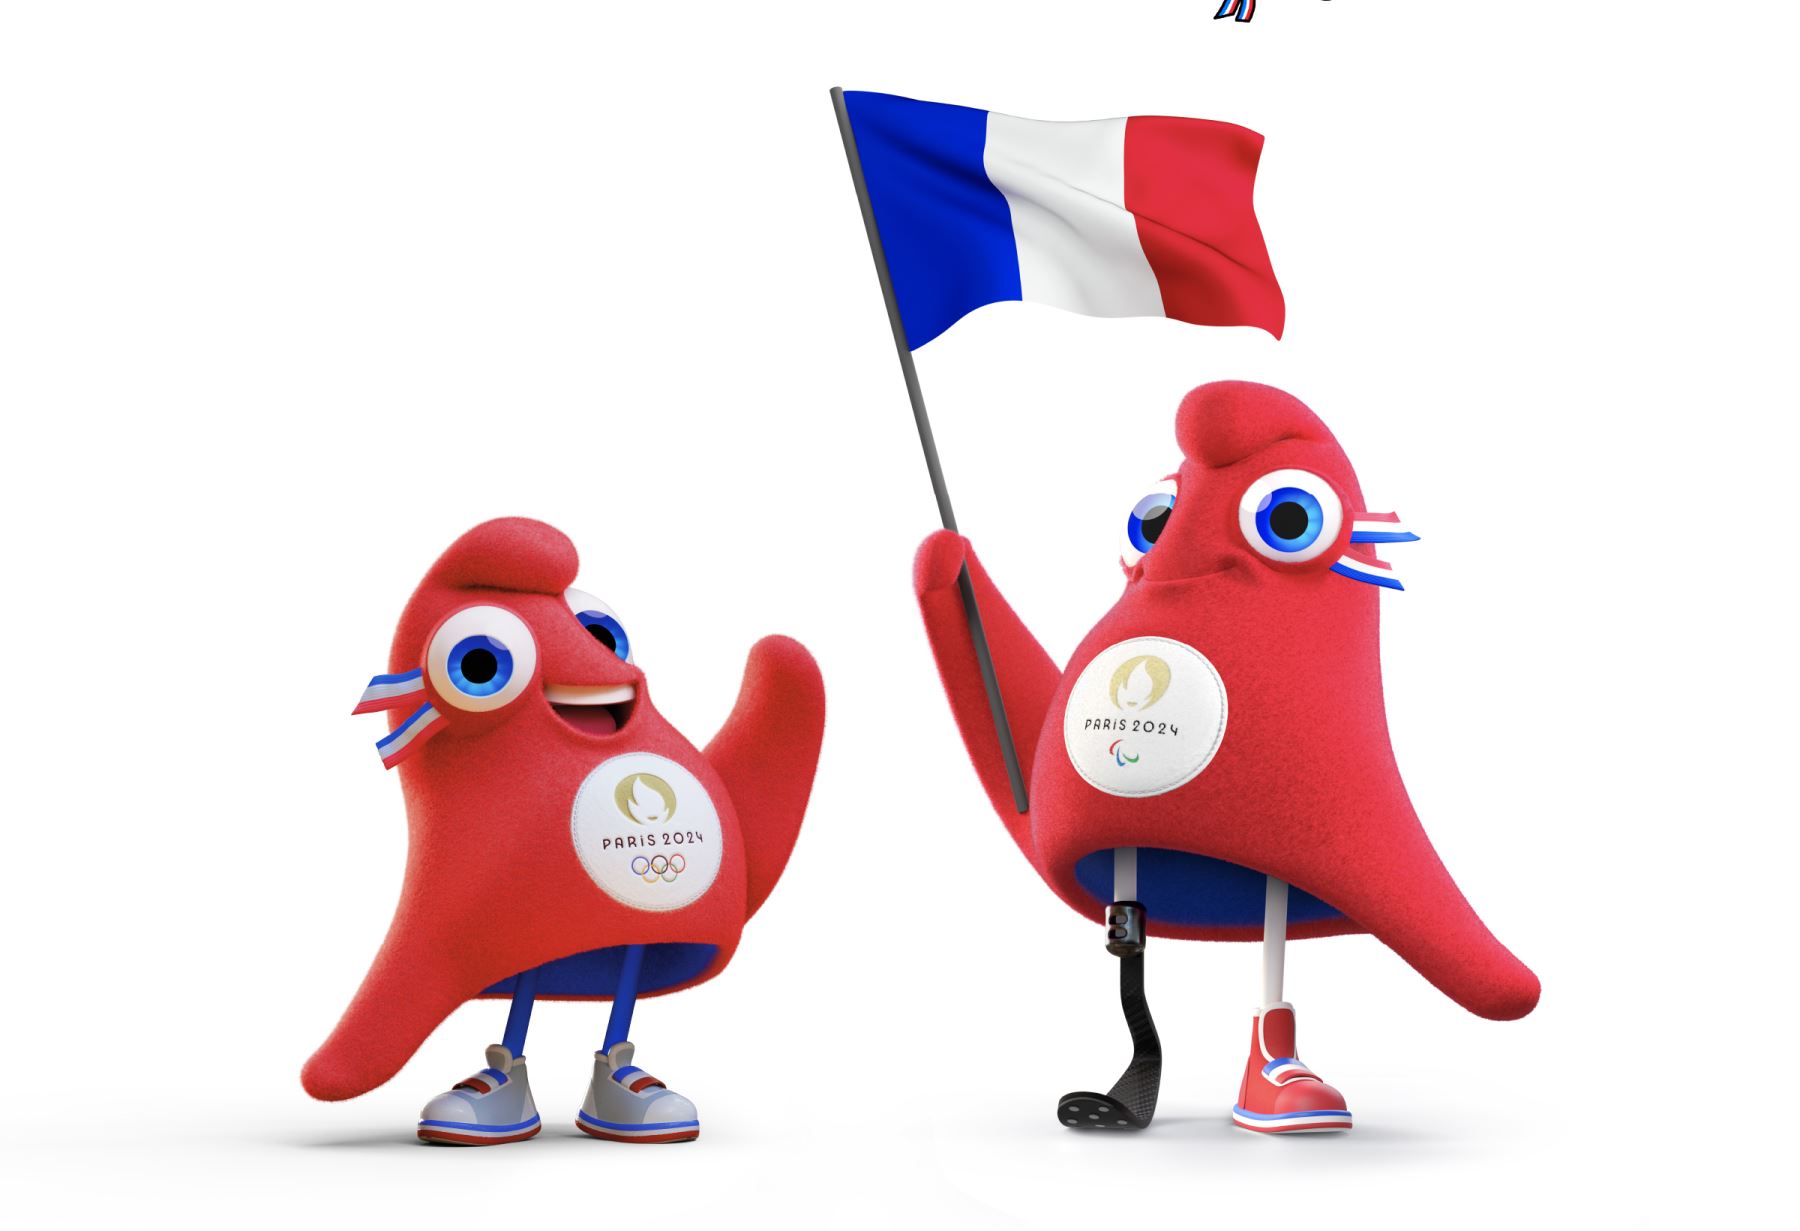 Phryge es un gorro frigio, el símbolo de la república francesa, que será la mascota de los Juegos Olímpicos París 2024